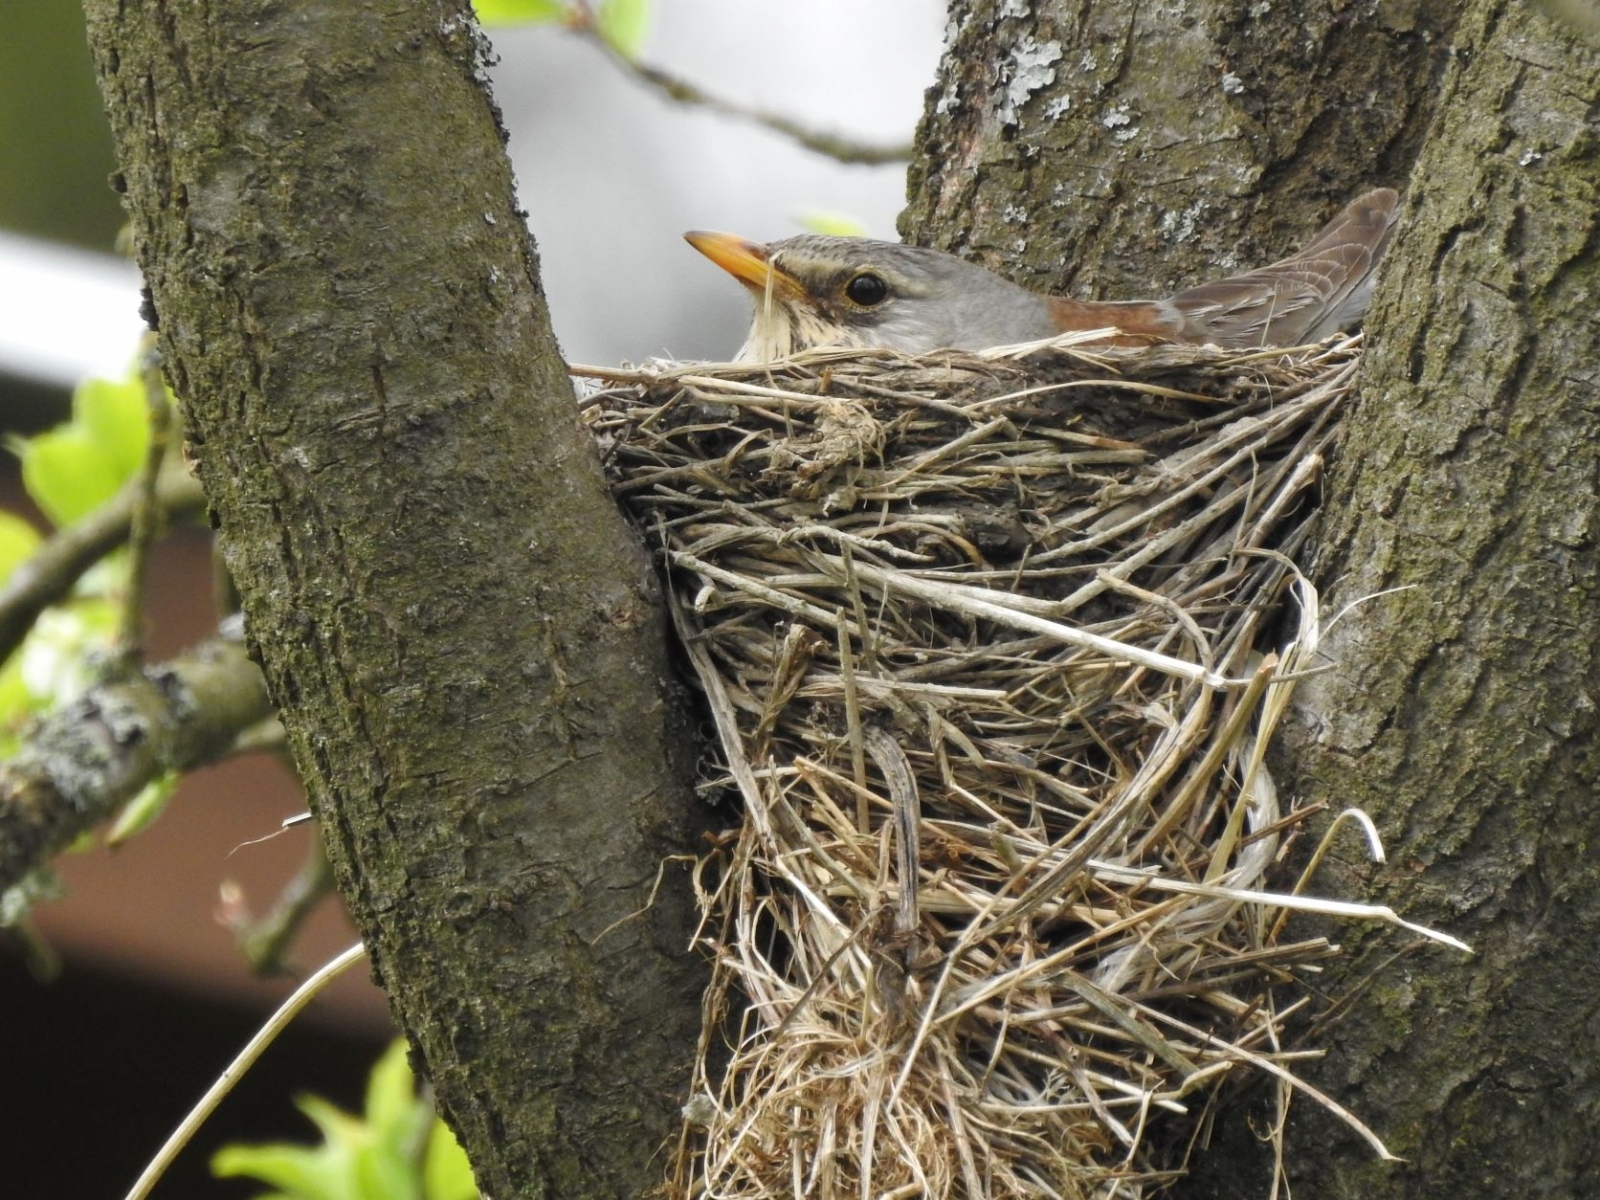 Kvíčaly udržují své hnízdo v čistotě, rodiče však v případě jeho ohrožení mohou trusem ostřelovat narušitele (foto: J. Lojda)